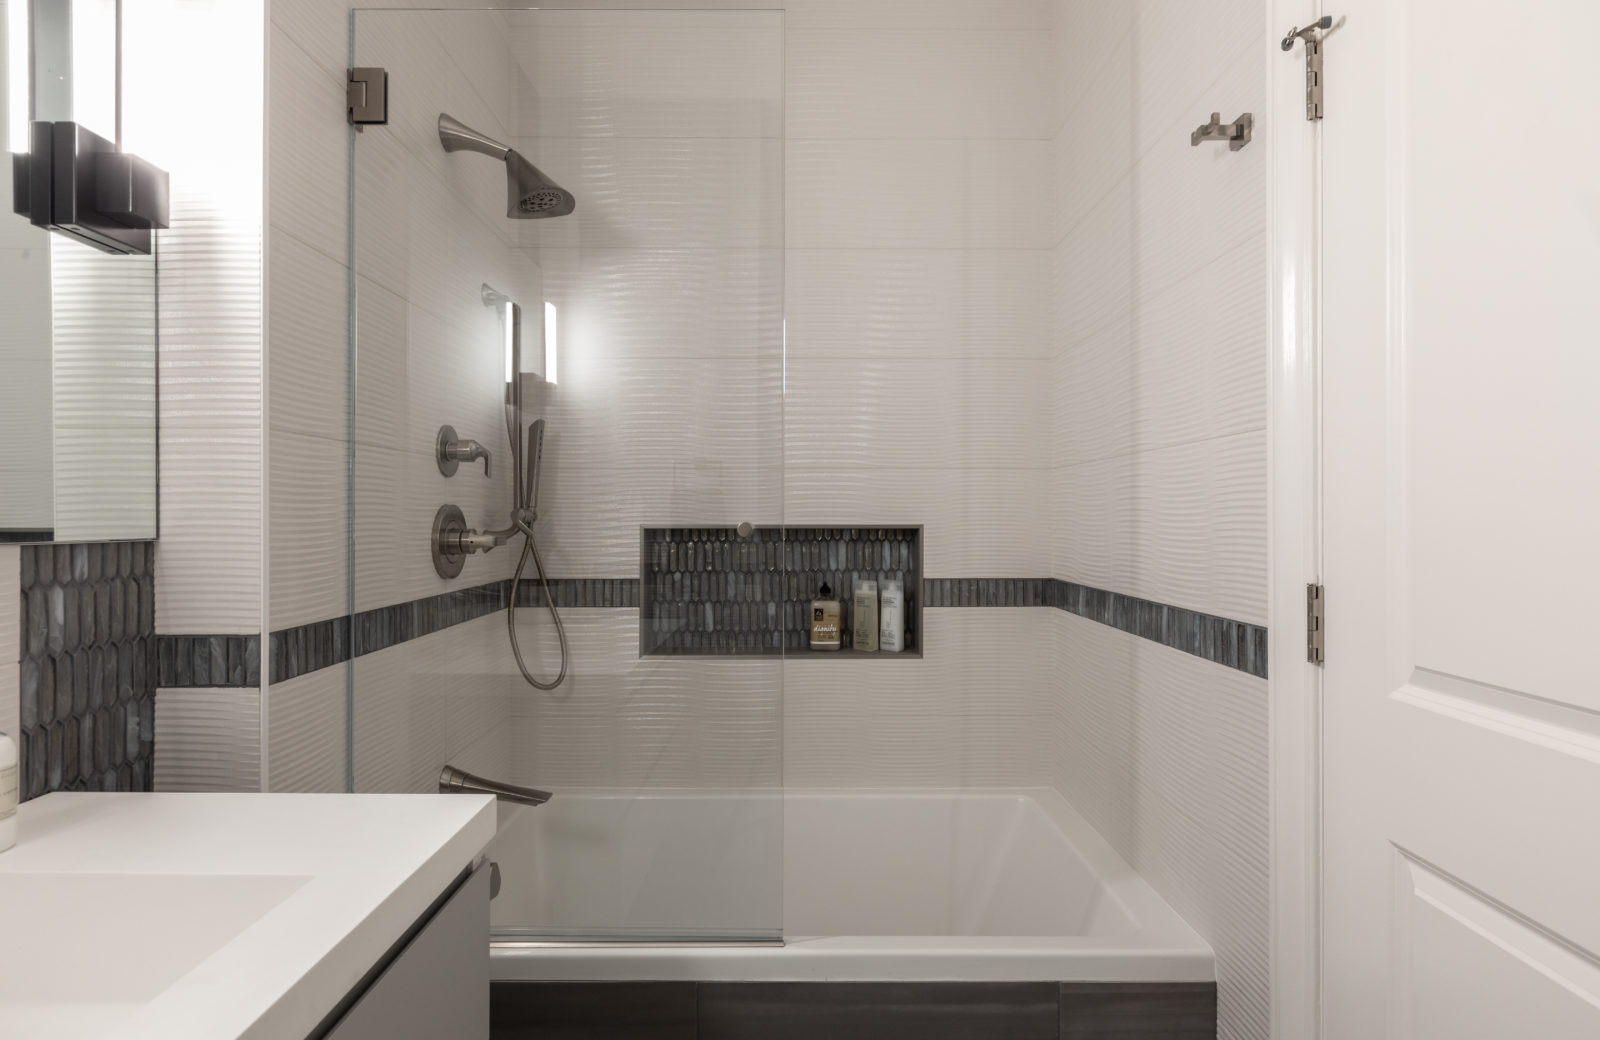 Award Winning Upstairs Hall Bath Remodel luxury white gray Pleasanton Ca